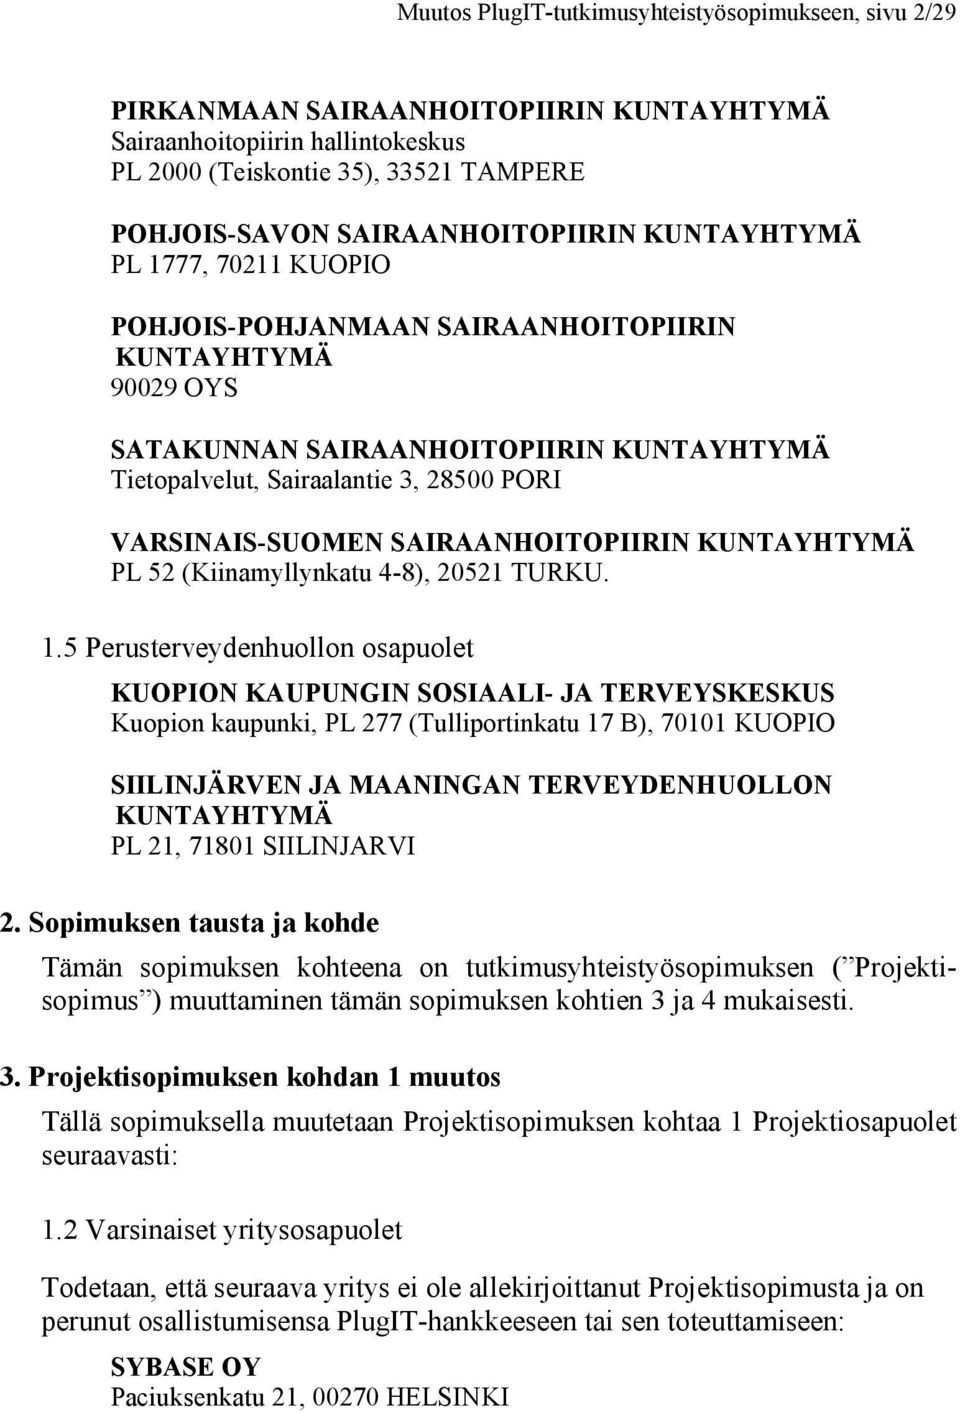 VARSINAIS-SUOMEN SAIRAANHOITOPIIRIN KUNTAYHTYMÄ PL 52 (Kiinamyllynkatu 4-8), 20521 TURKU. 1.